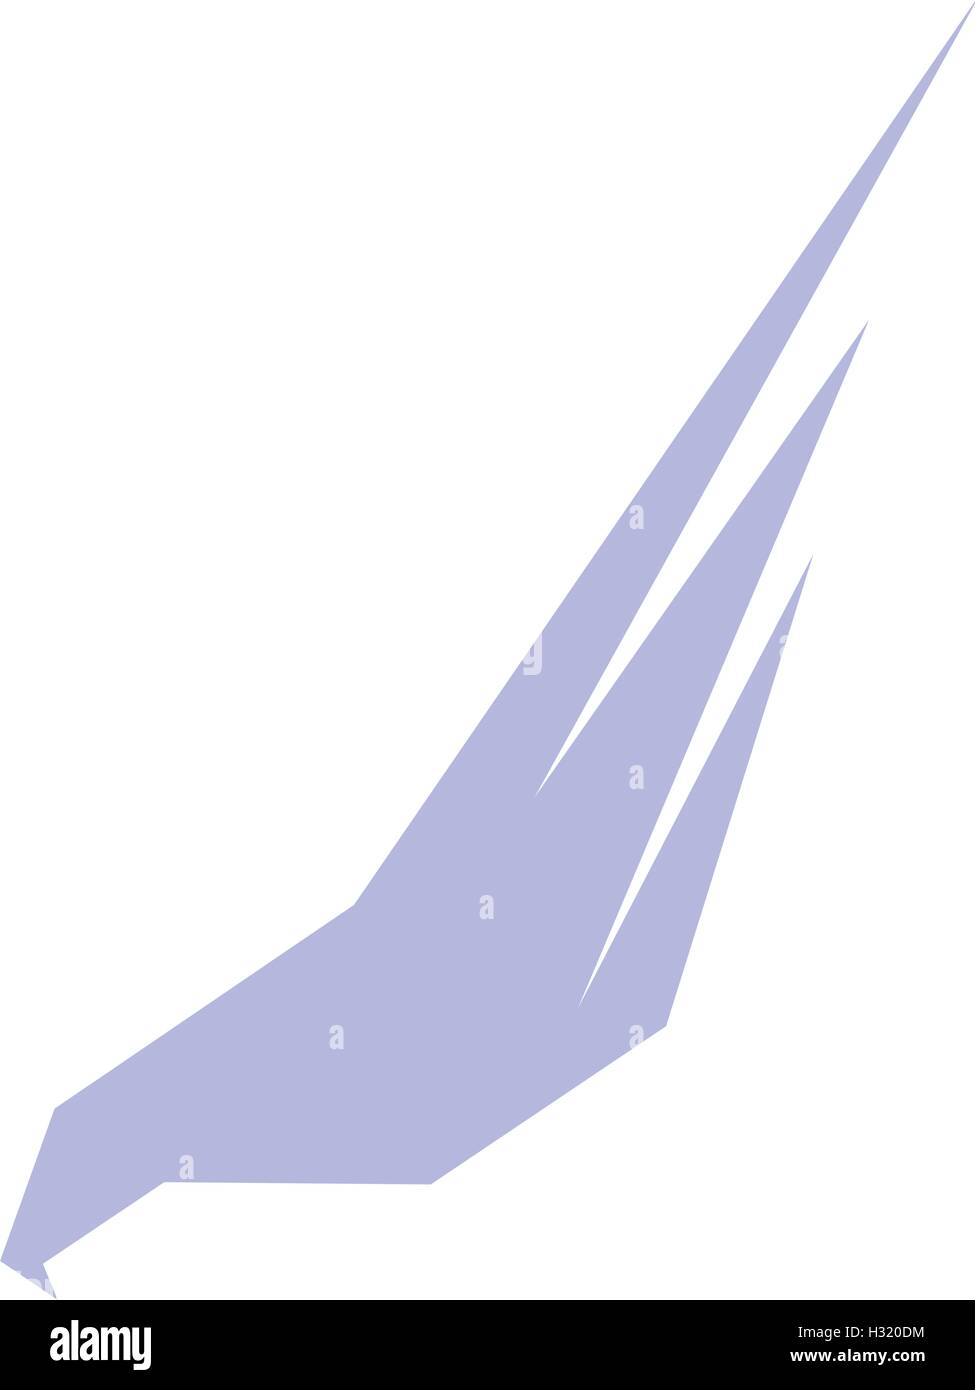 Abstract isolato il colore violetto eagle,hawk di Falcon silhouette logo. Caccia pericolose bird logotipo. Icona di ali. Elemento dell'aria. Segno di volo. Simbolo di compagnie aeree. Illustrazione Vettoriale. Illustrazione Vettoriale